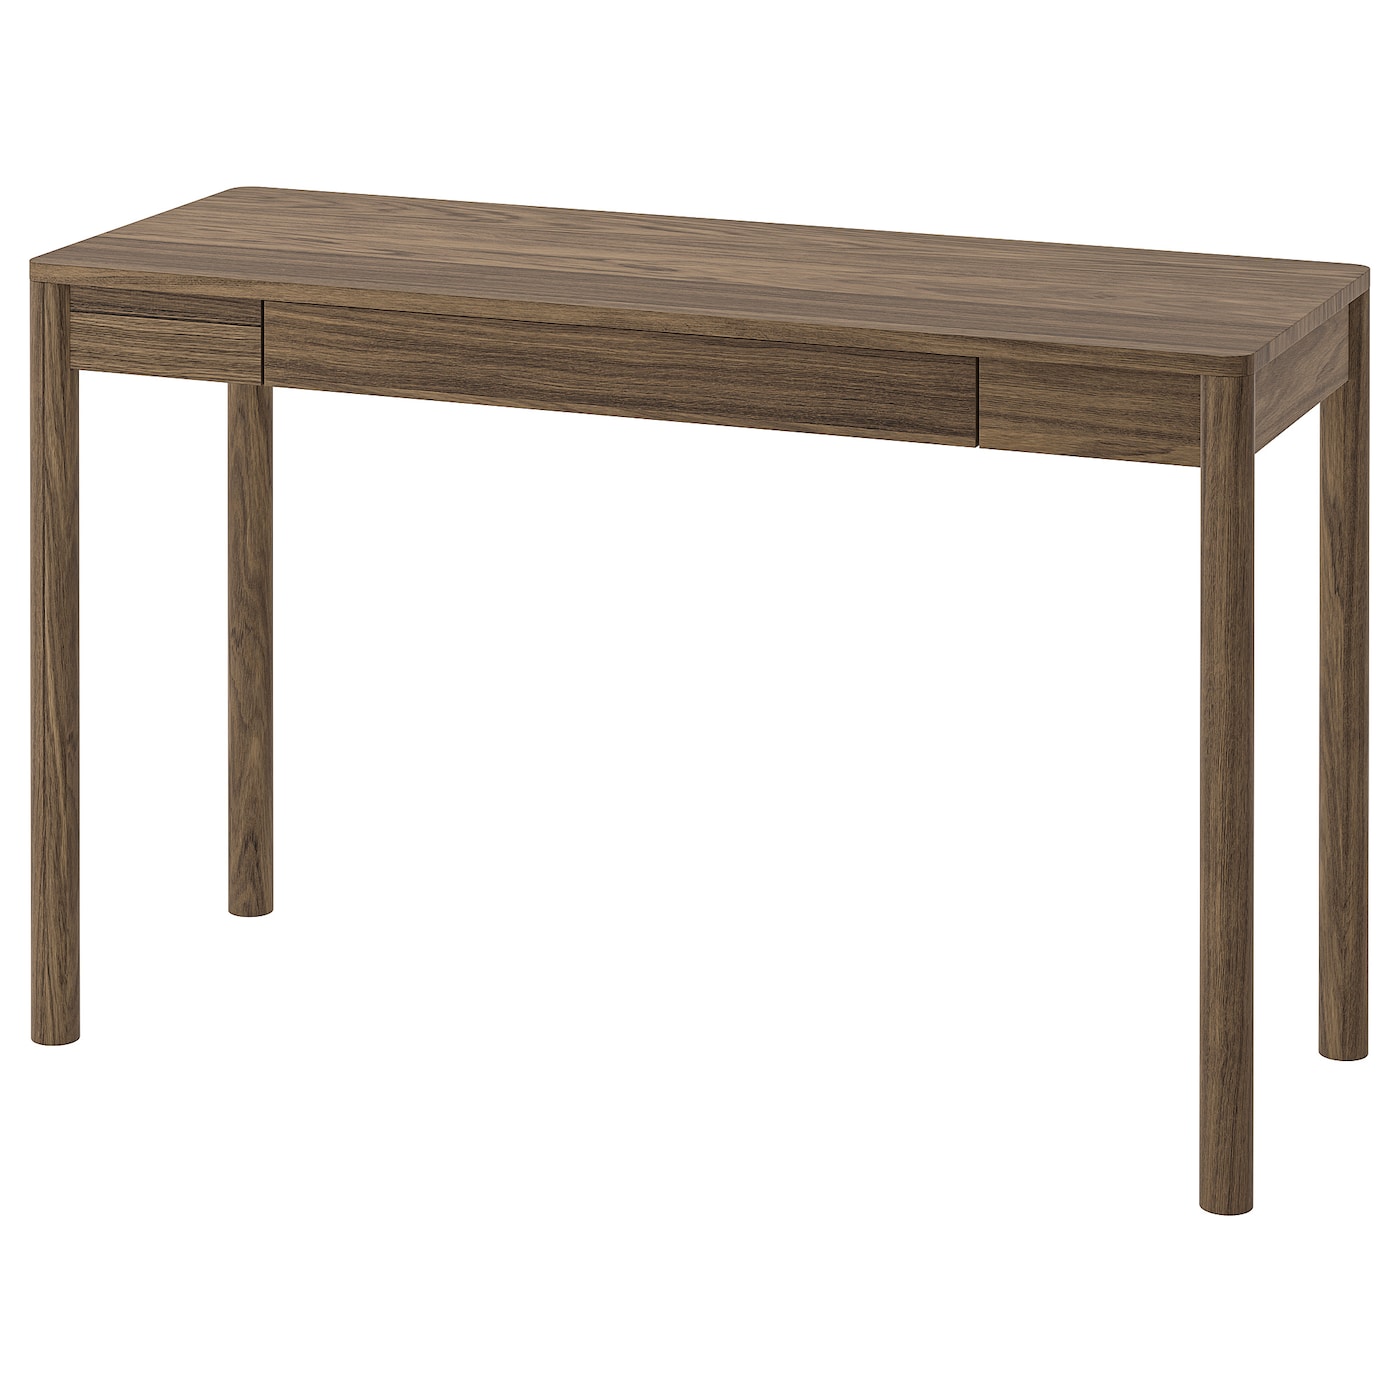 Письменный стол - IKEA TONSTAD, 120x47 см, коричневый дубовый шпон, ТОНСТАД ИКЕА